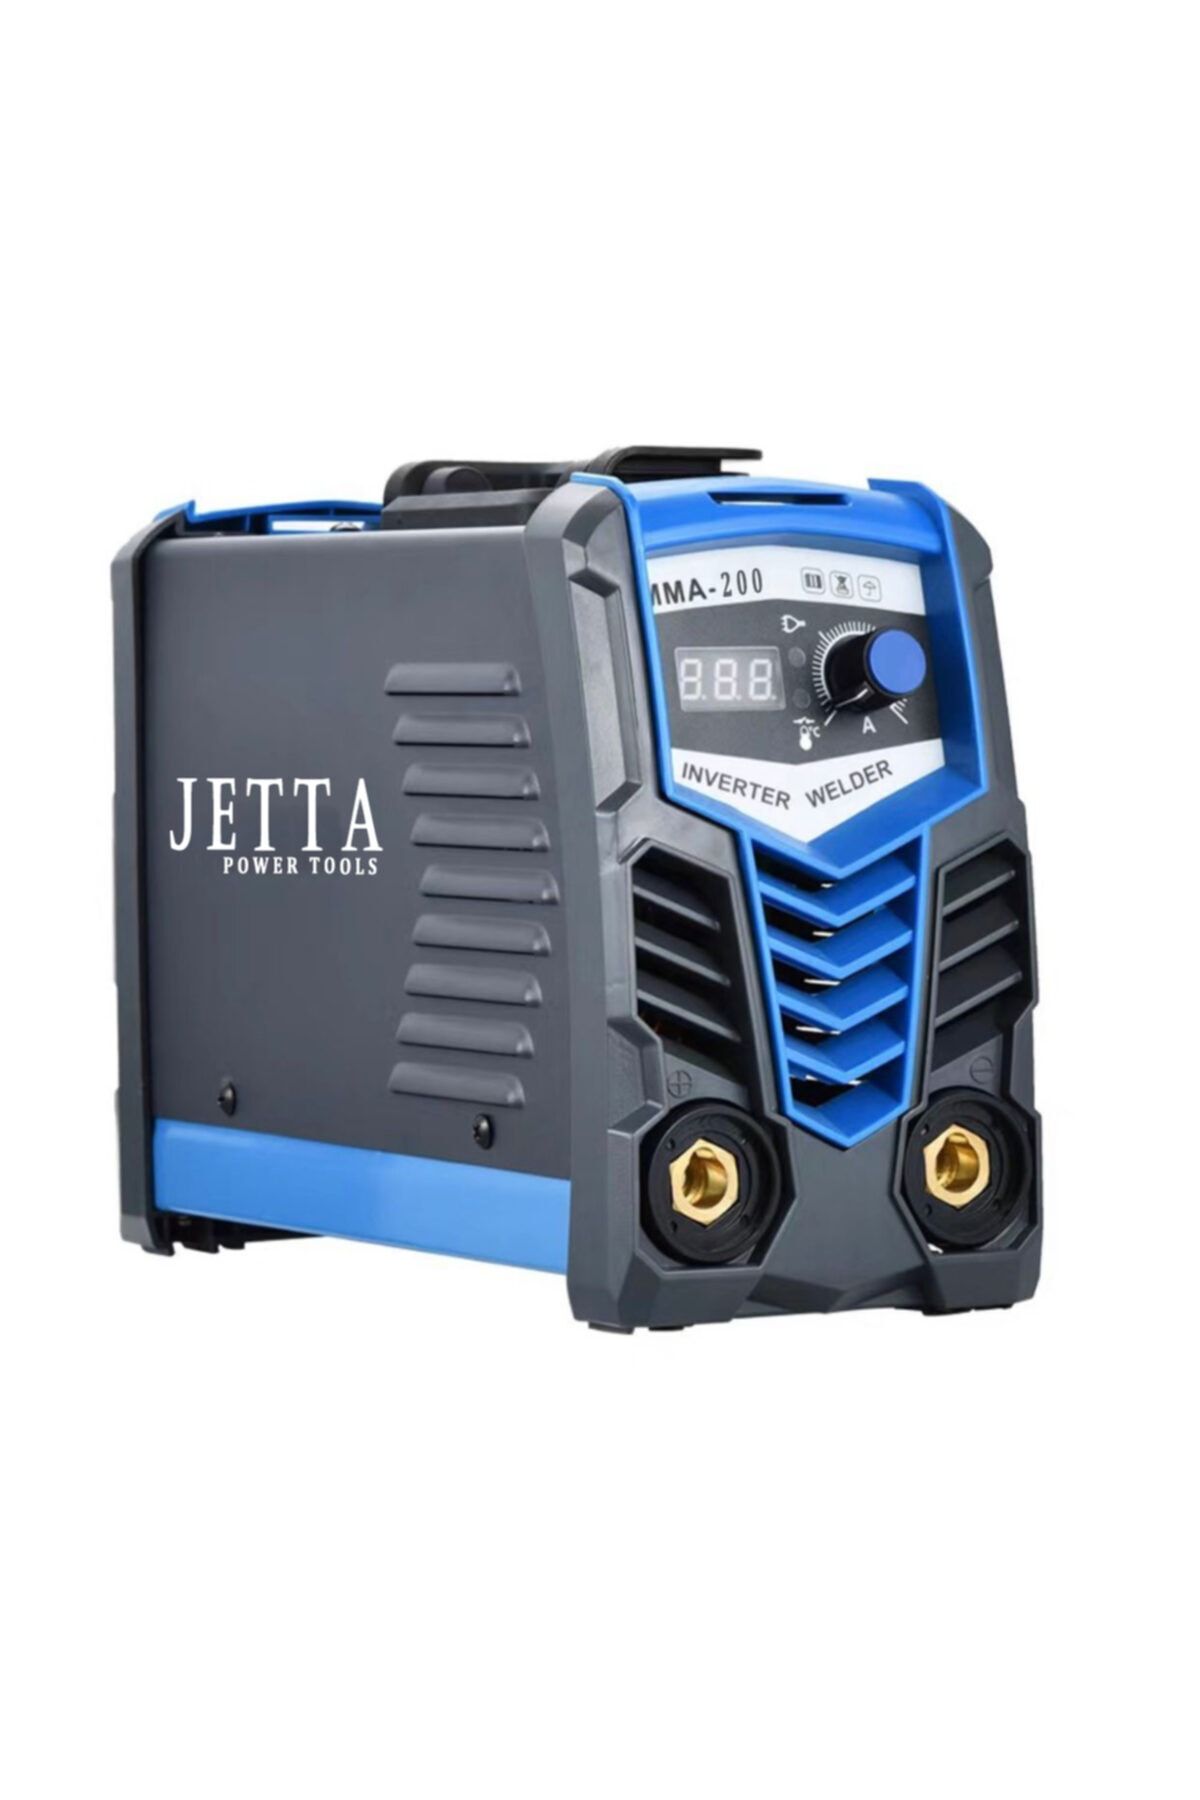 Jetta Power Tools Jetta Power 500 Pro Inverter Dijital Göstergeli Kaynak Makinası 200 Amp 2,5 3 Sorunsuz Eritir